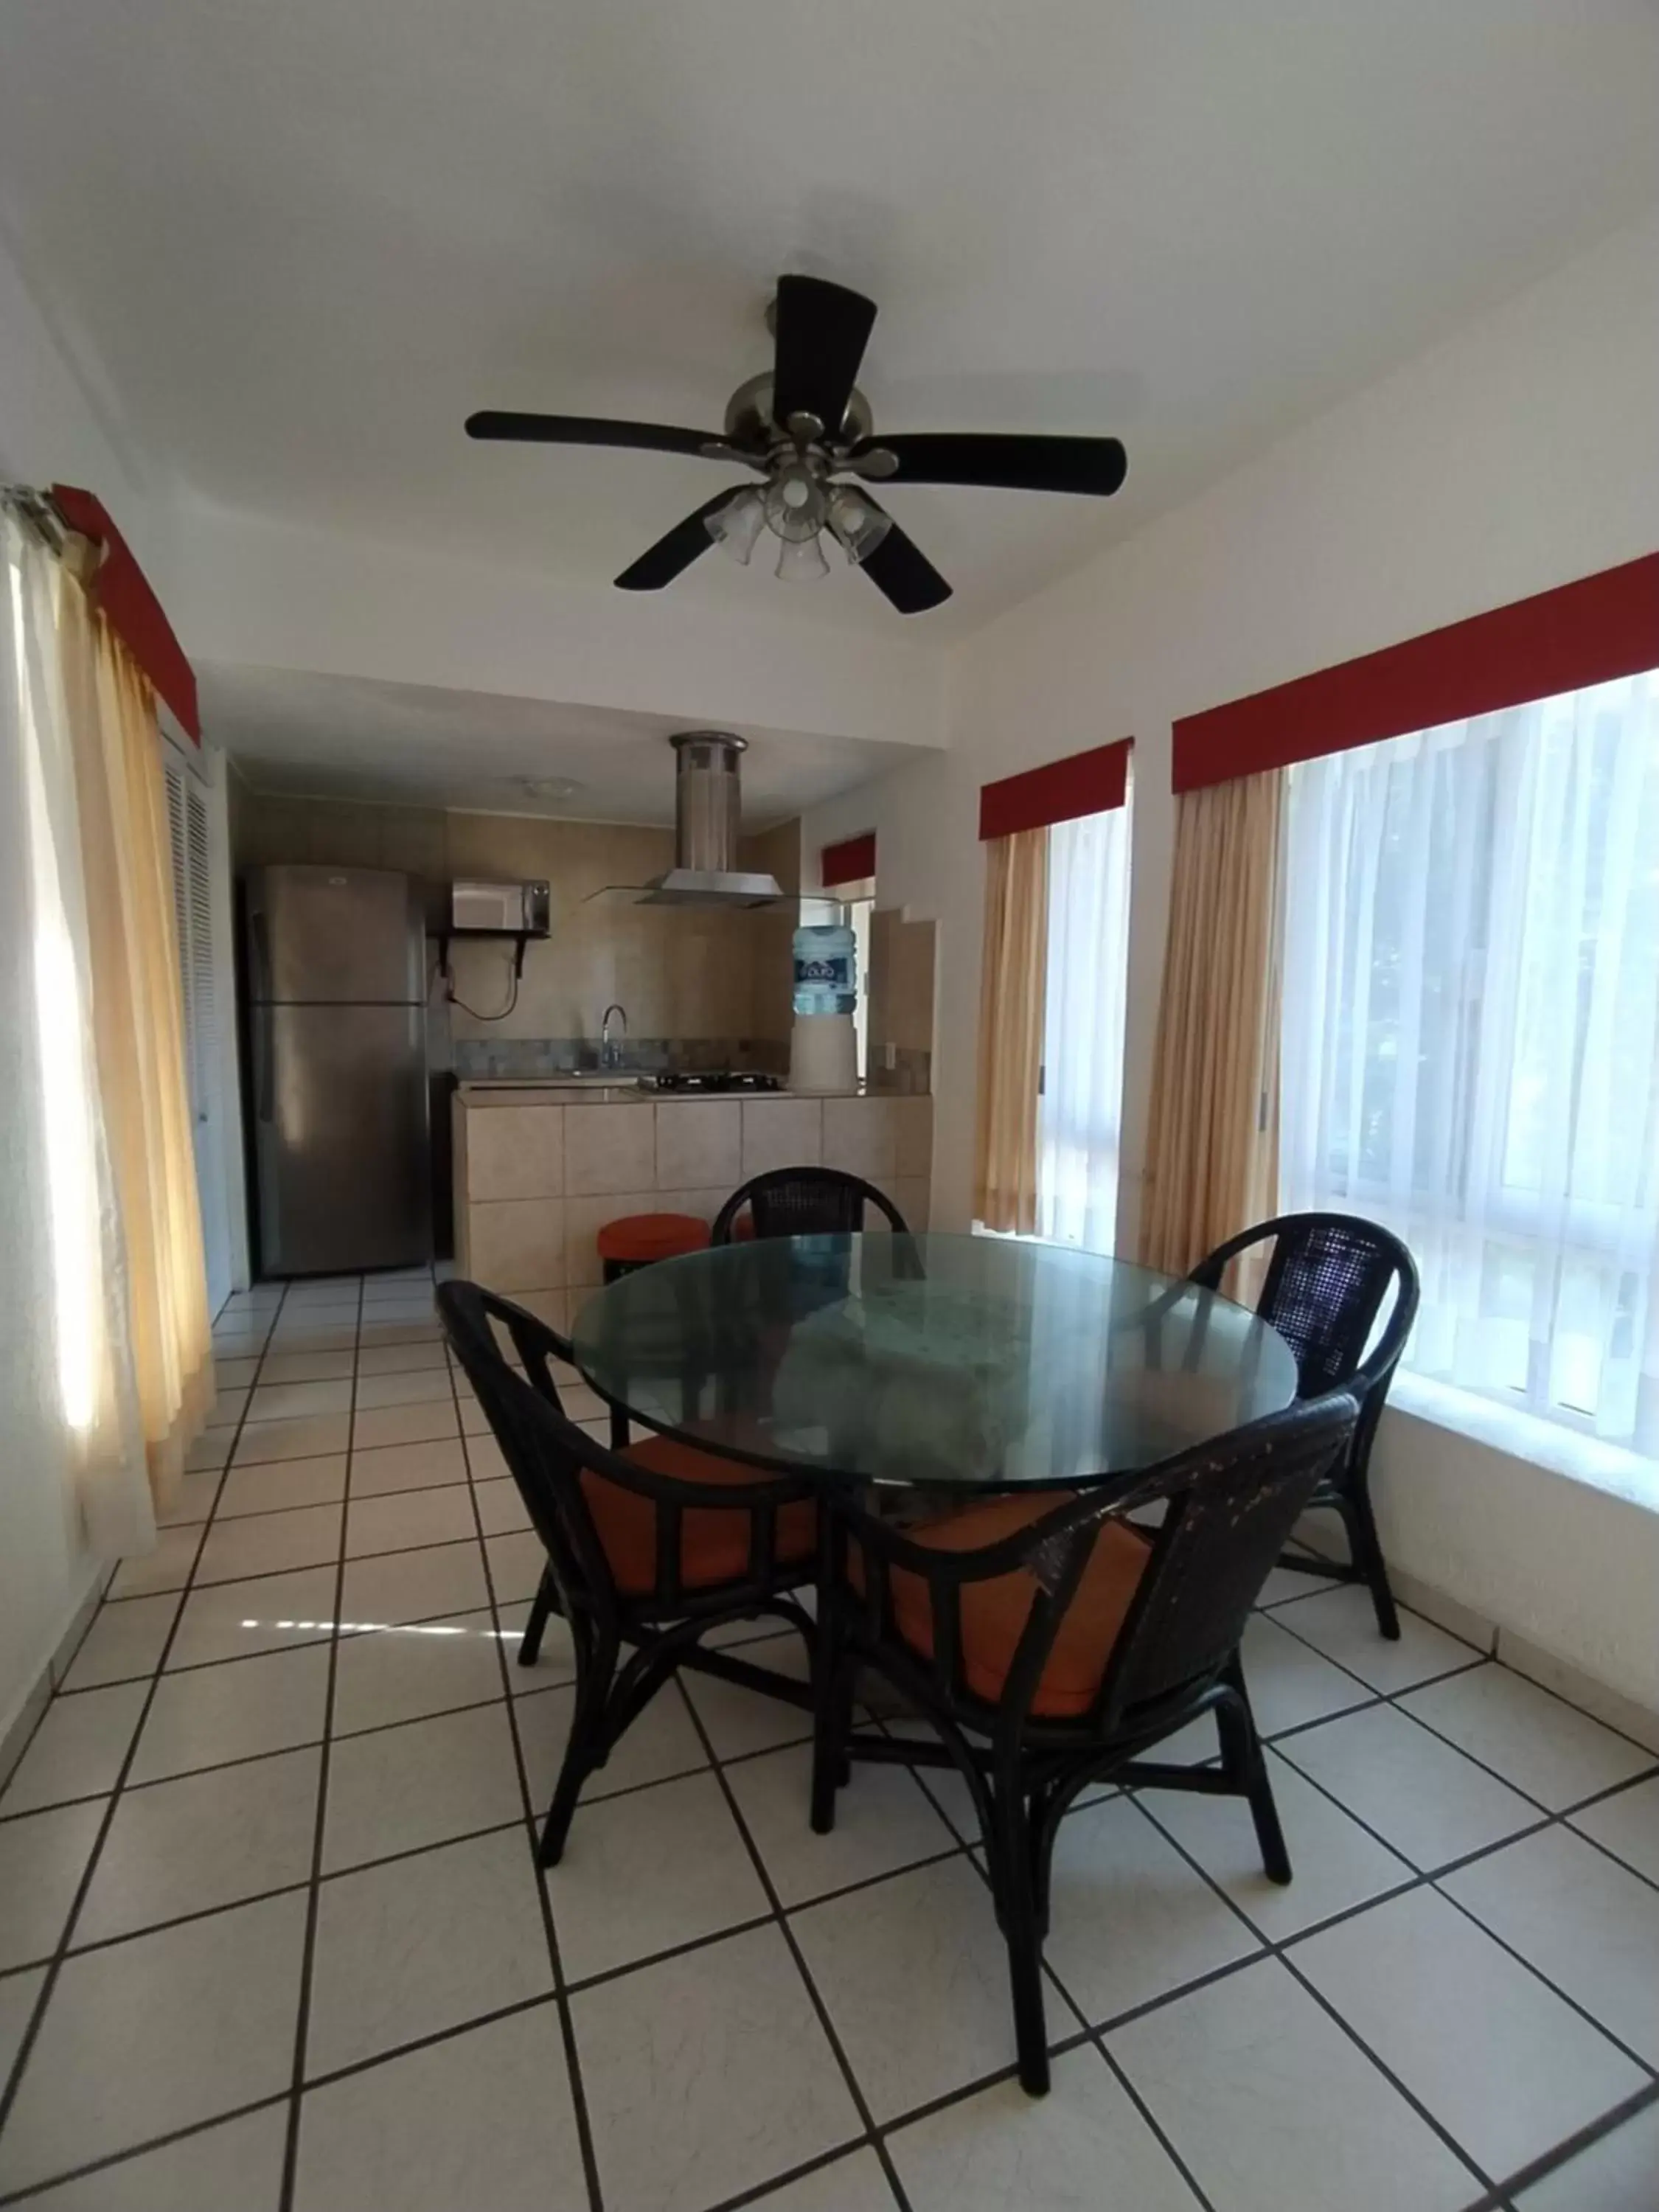 kitchen, Dining Area in Villas del Palmar Manzanillo with Beach Club